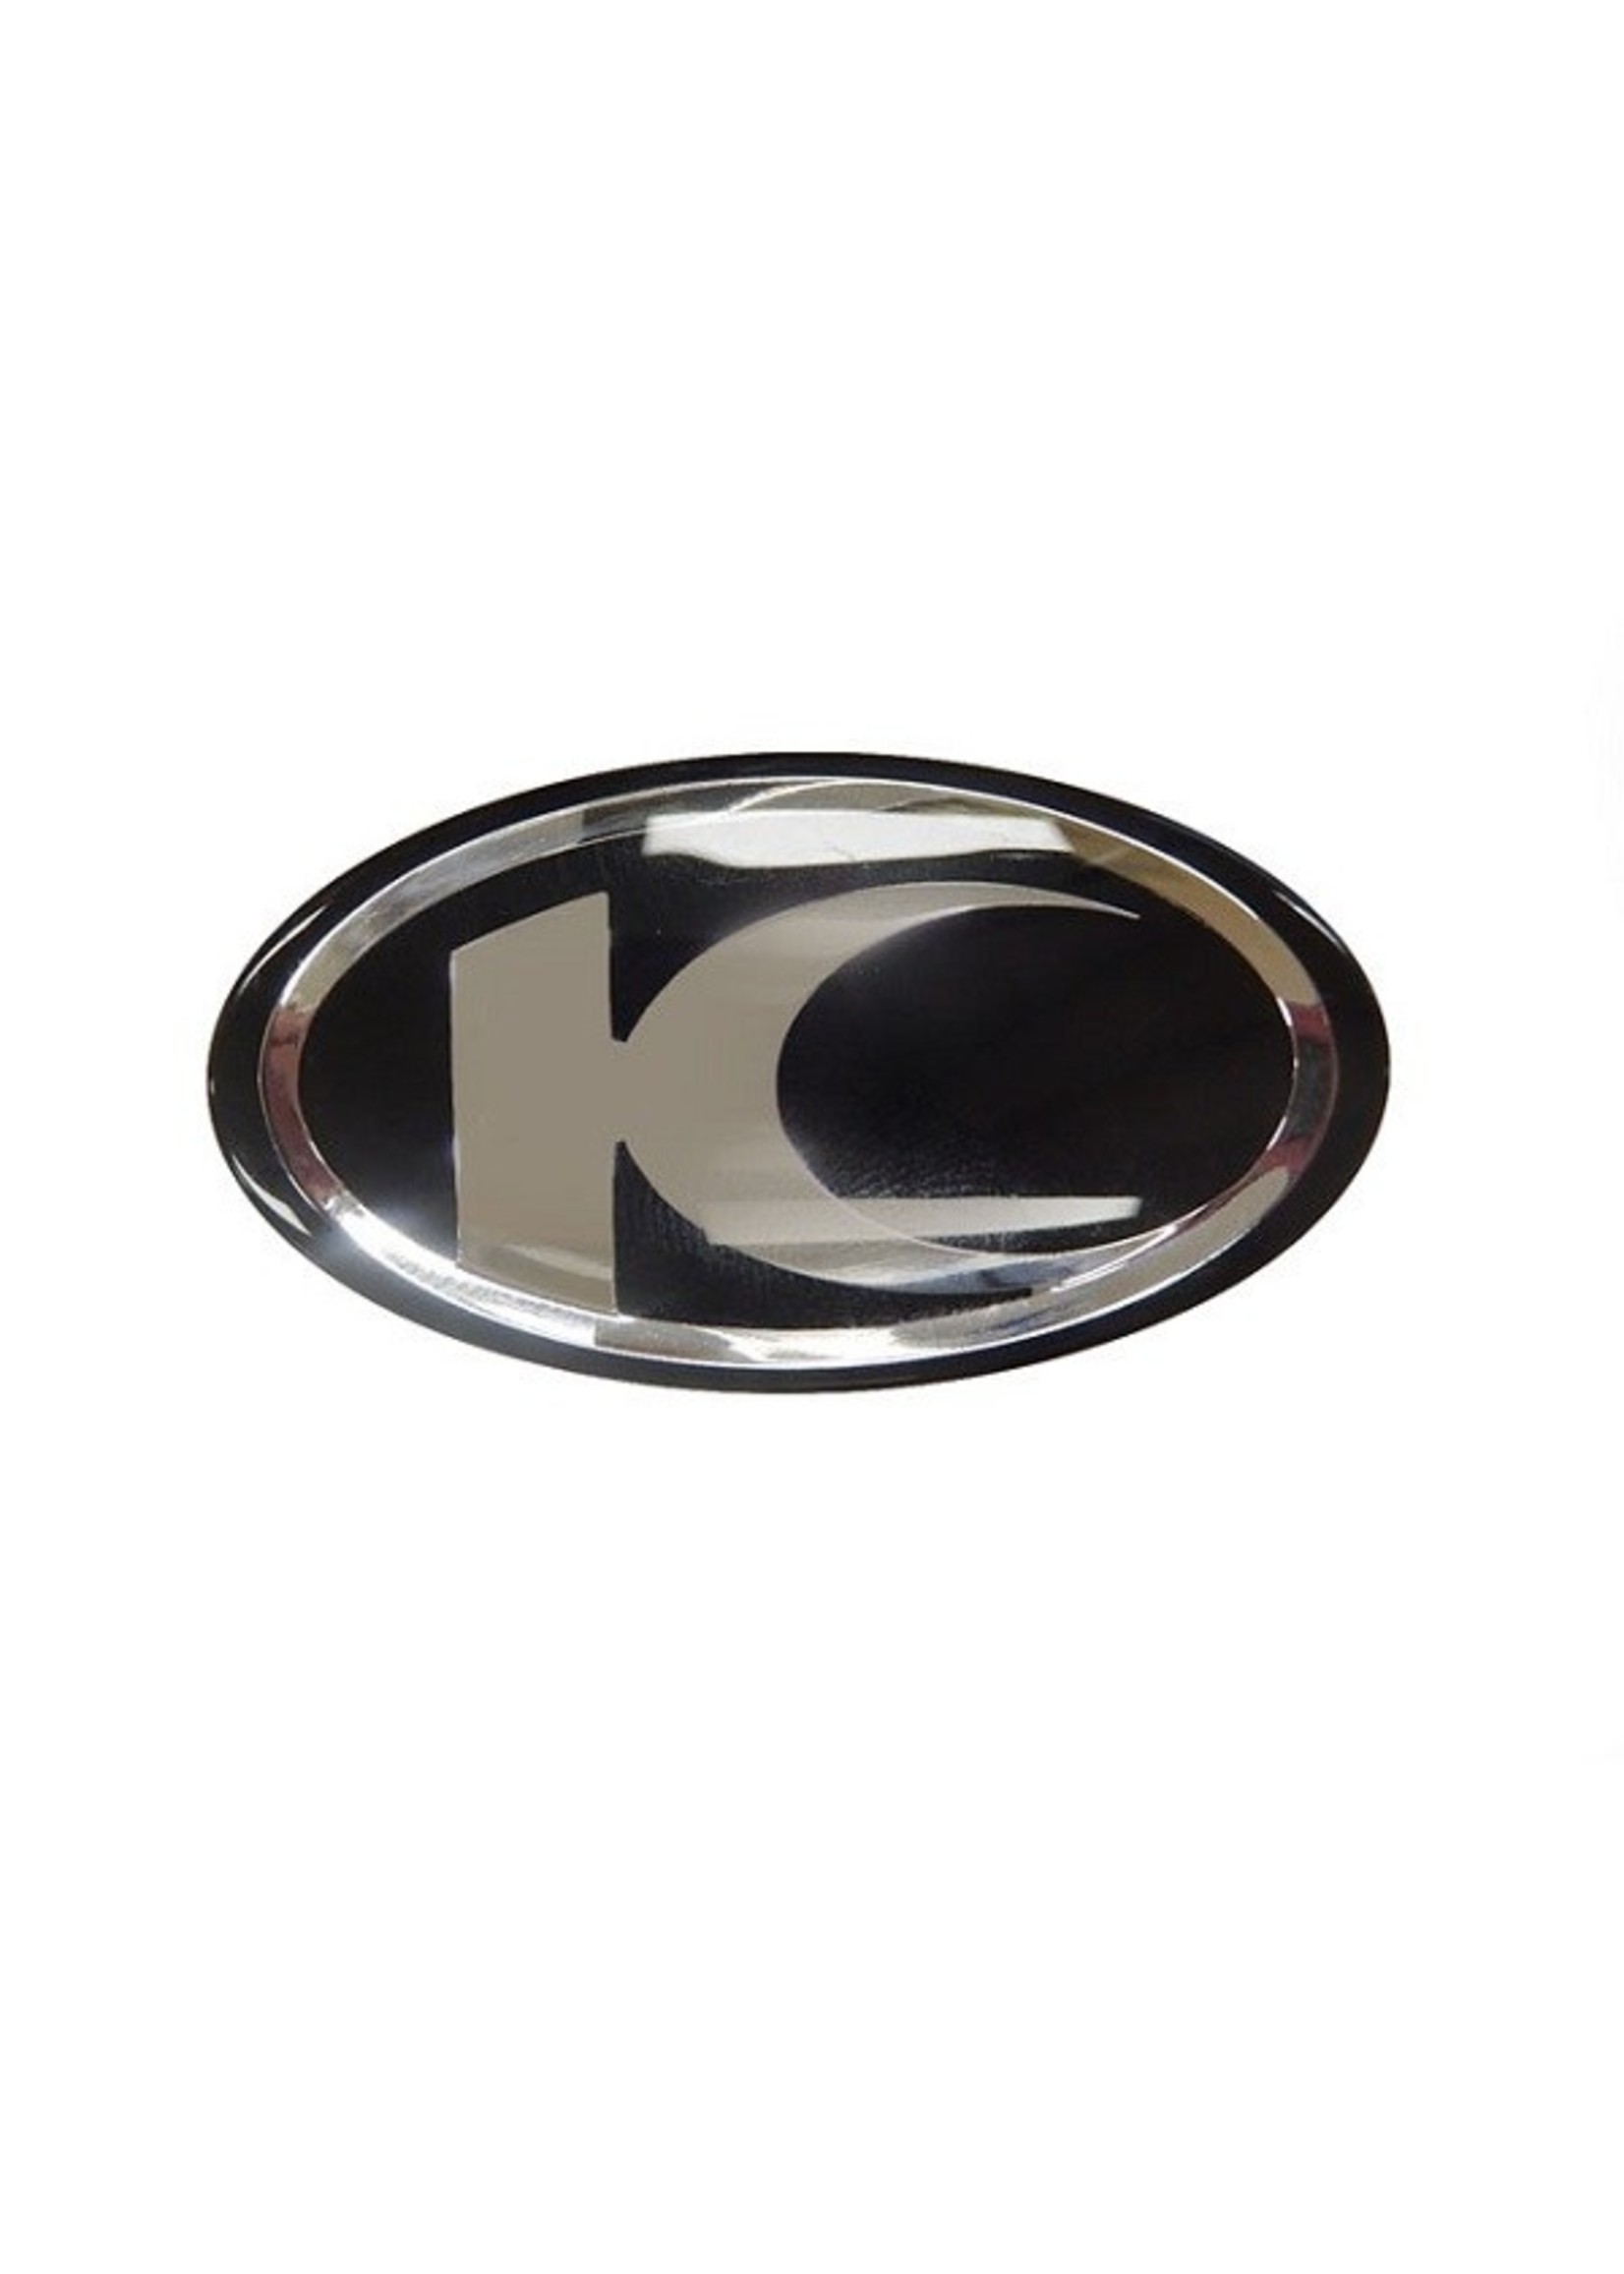 Kymco sticker kymco logo dik newlike/super8 zwart/chroom kymco orig 86102-alg1-e00-t01